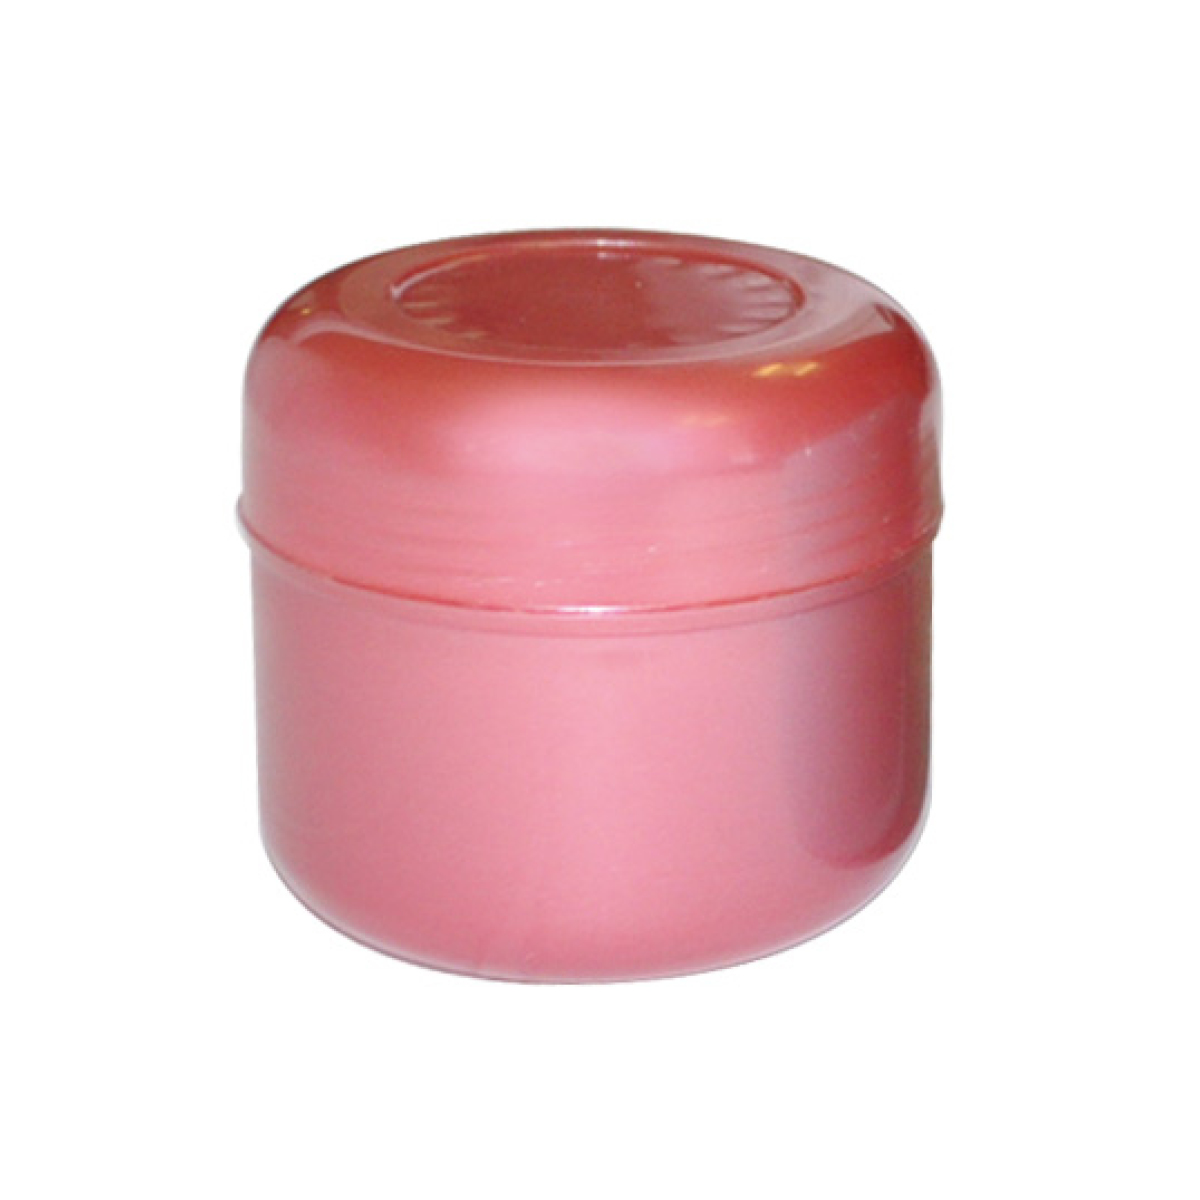 Kozmetikai tégely sztirol többféle színben 50 ml - 1 db 